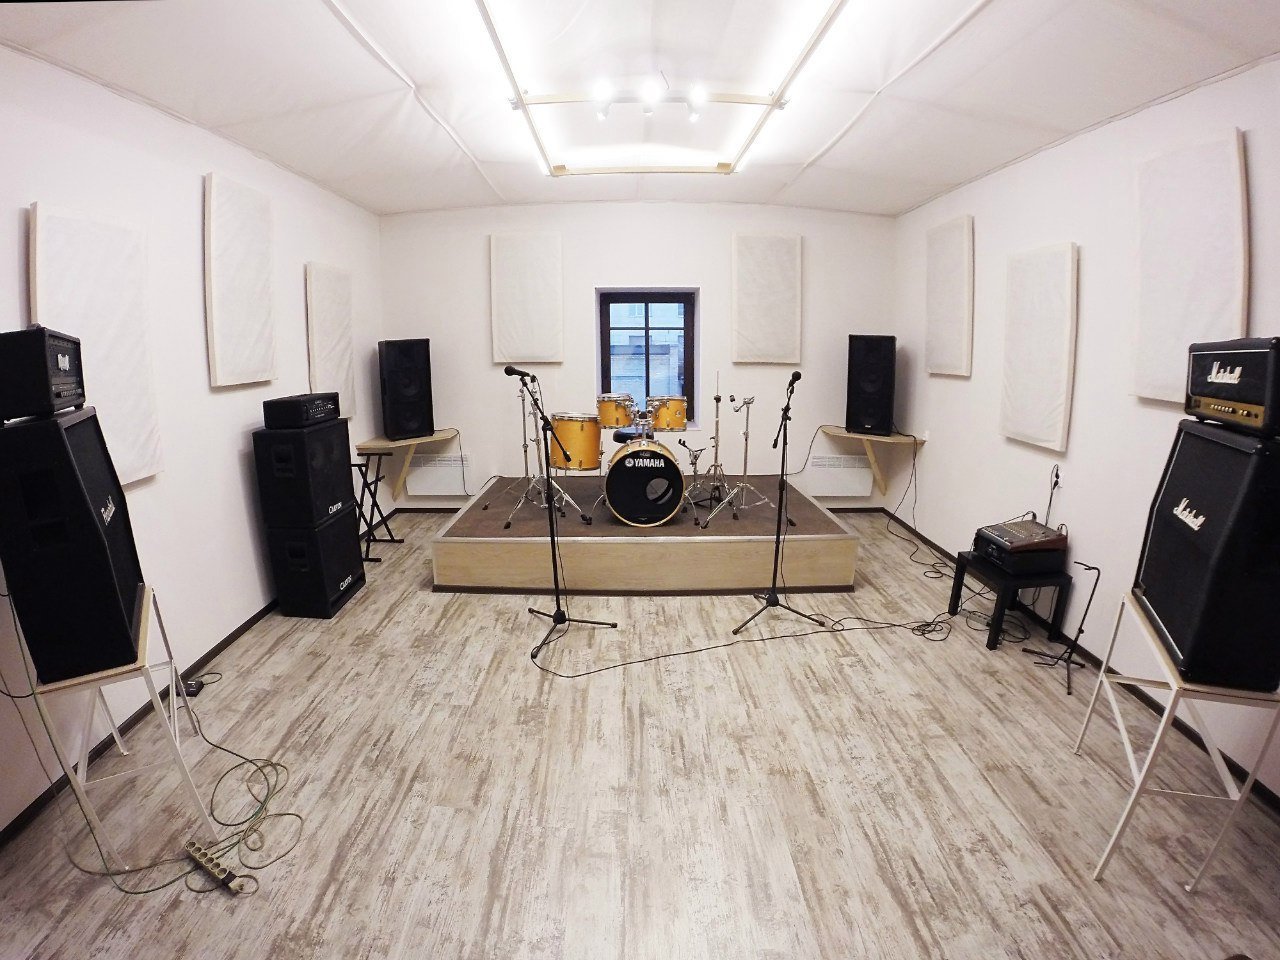 Вокальный зал. Музыкальная студия. Репетиционная комната. Студия для репетиций. Тон зал студии звукозаписи.